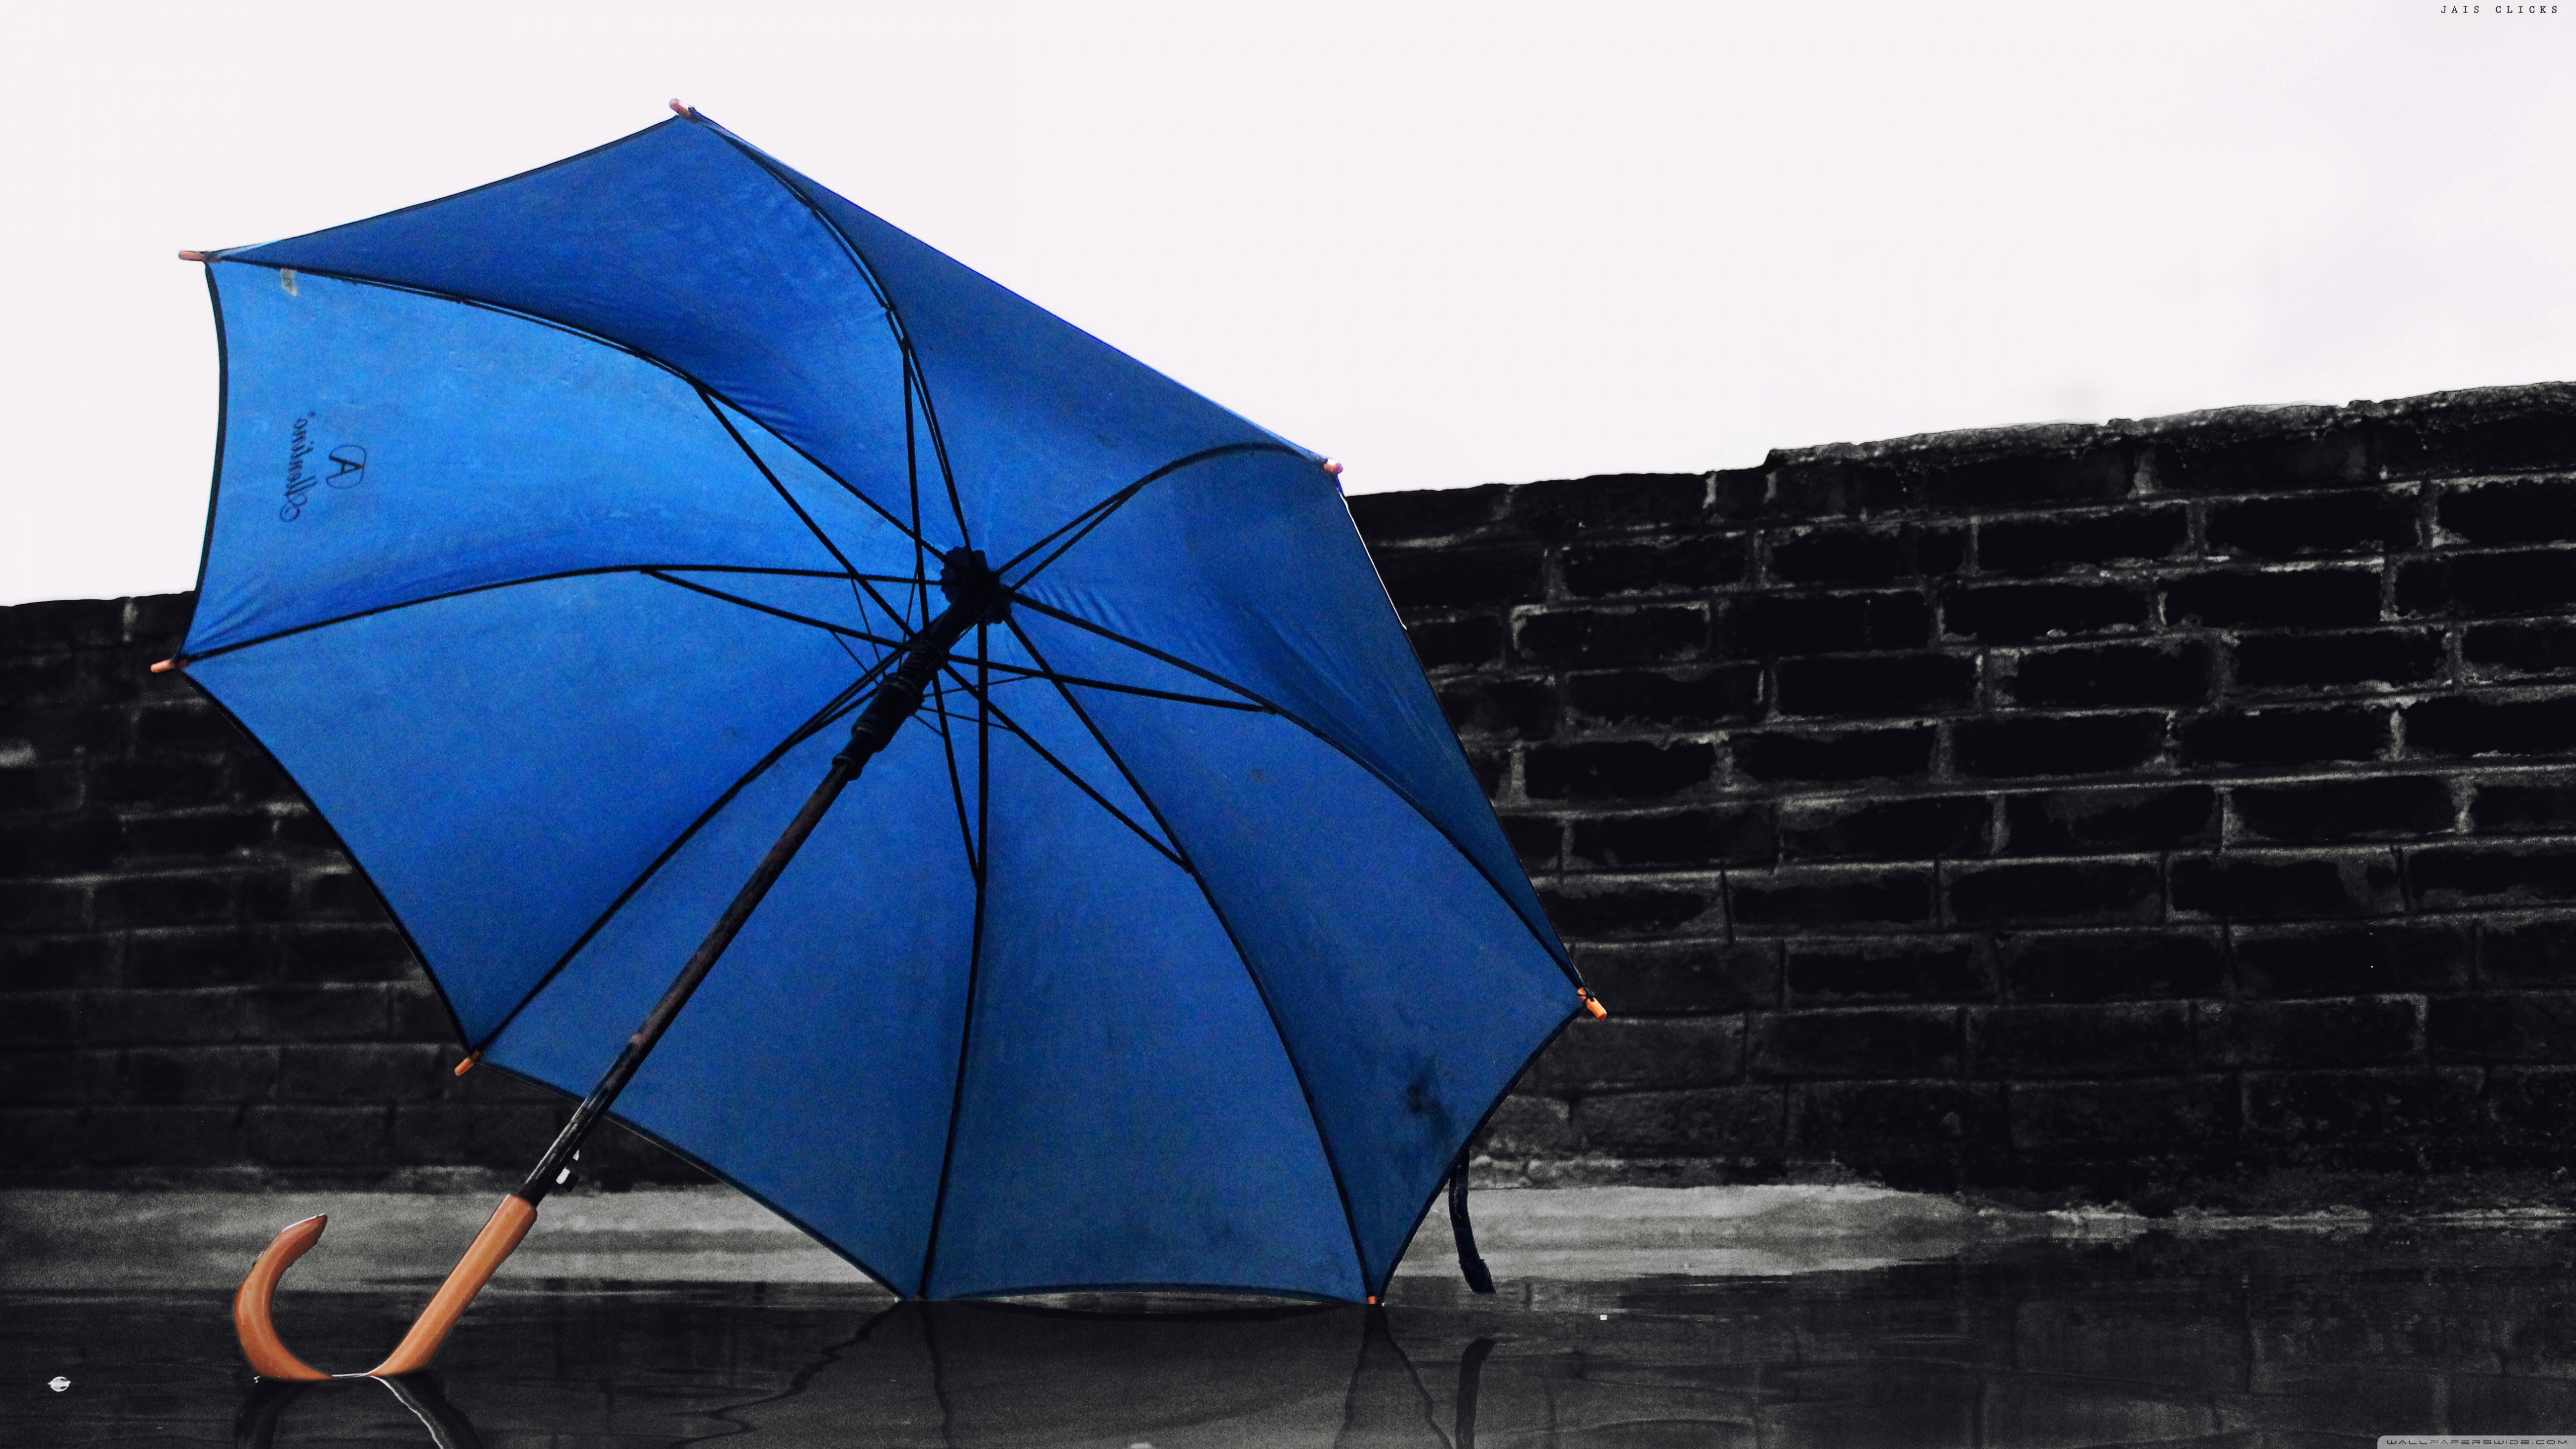 4k Blue Umbrella Wallpaper For Desktop And Mobile Phones - Blue Umbrella Wallpaper 4k - HD Wallpaper 